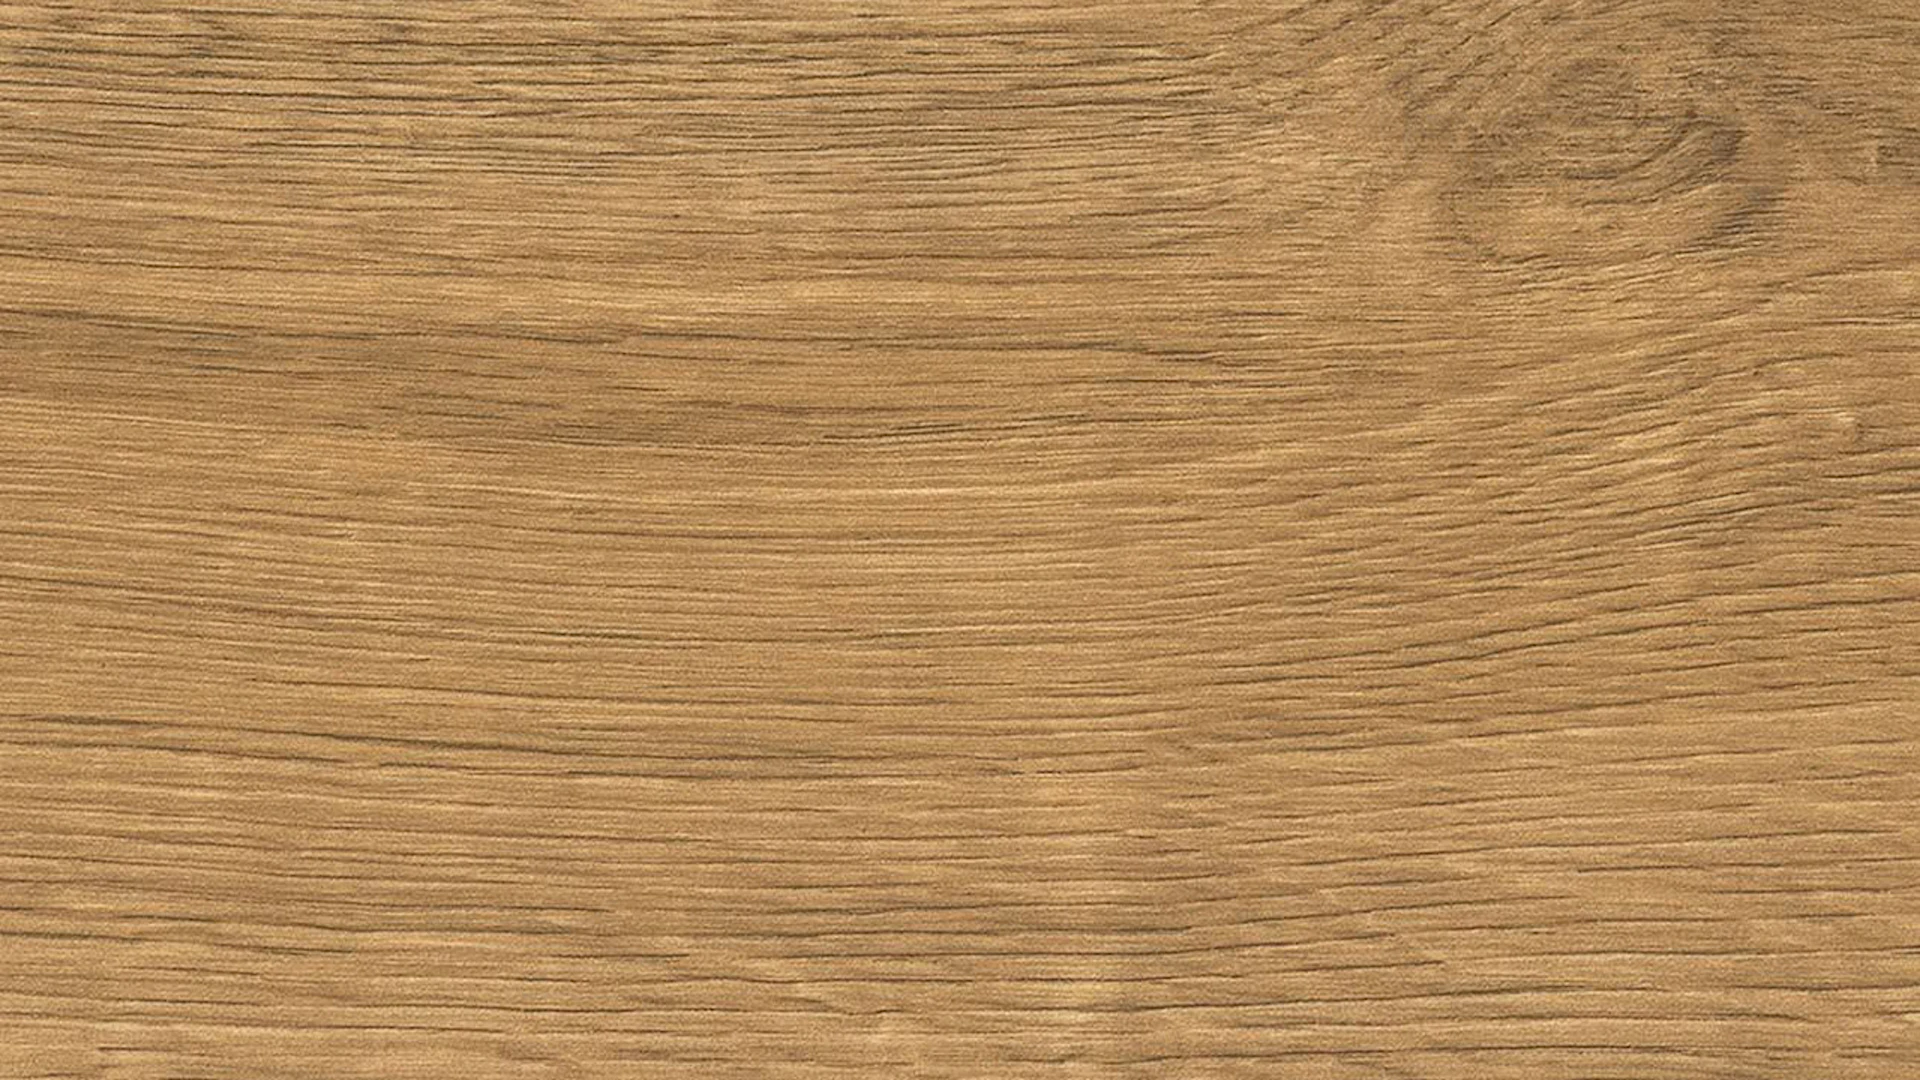 HARO click cork flooring Corkett Arteo XL Oak Portland natural